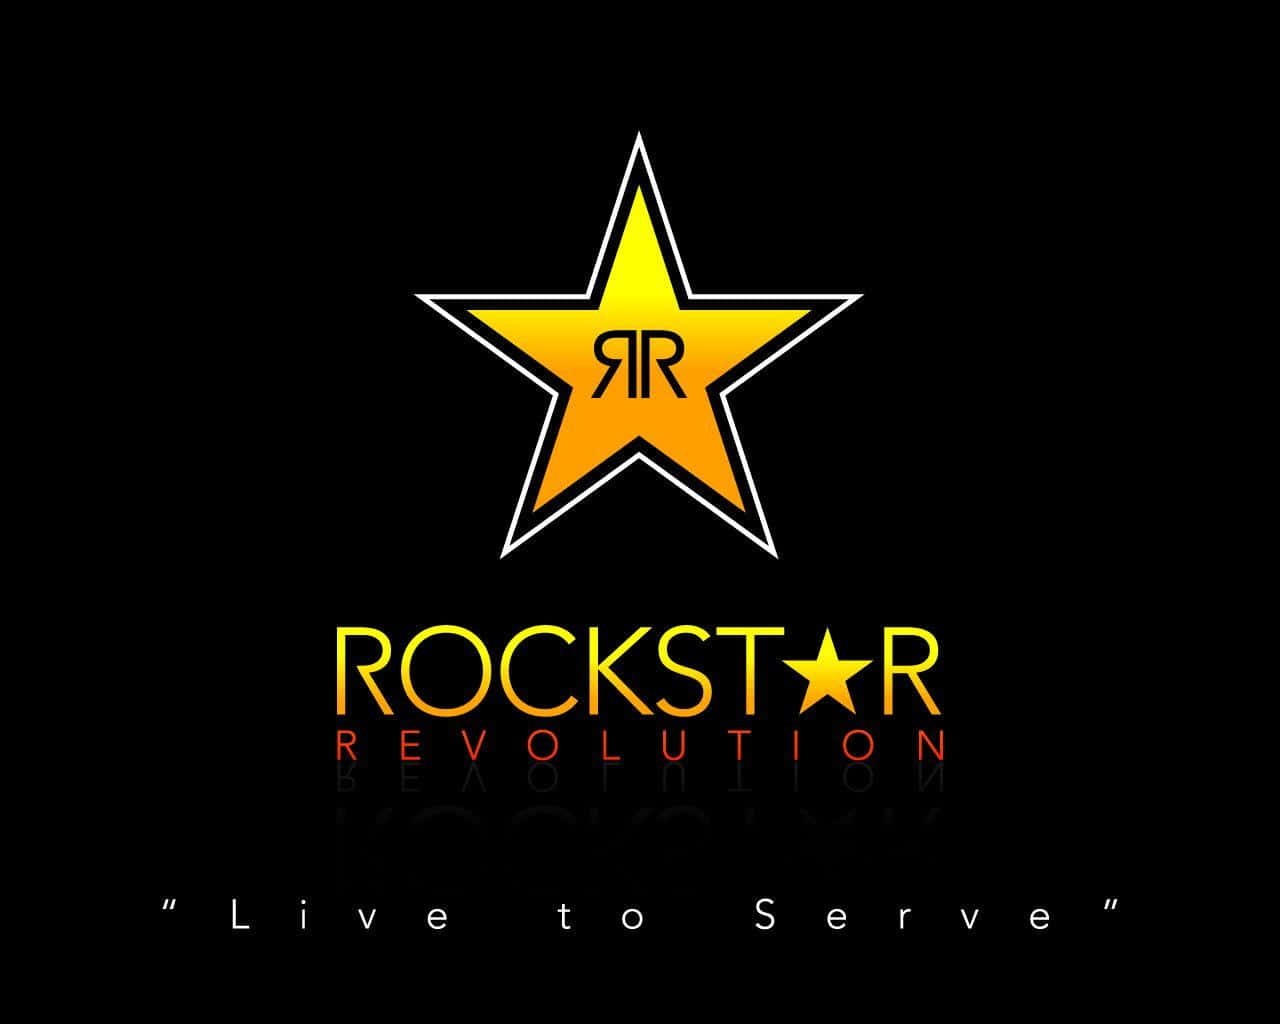 Rockstars Revolution Grafikdesign Wallpaper